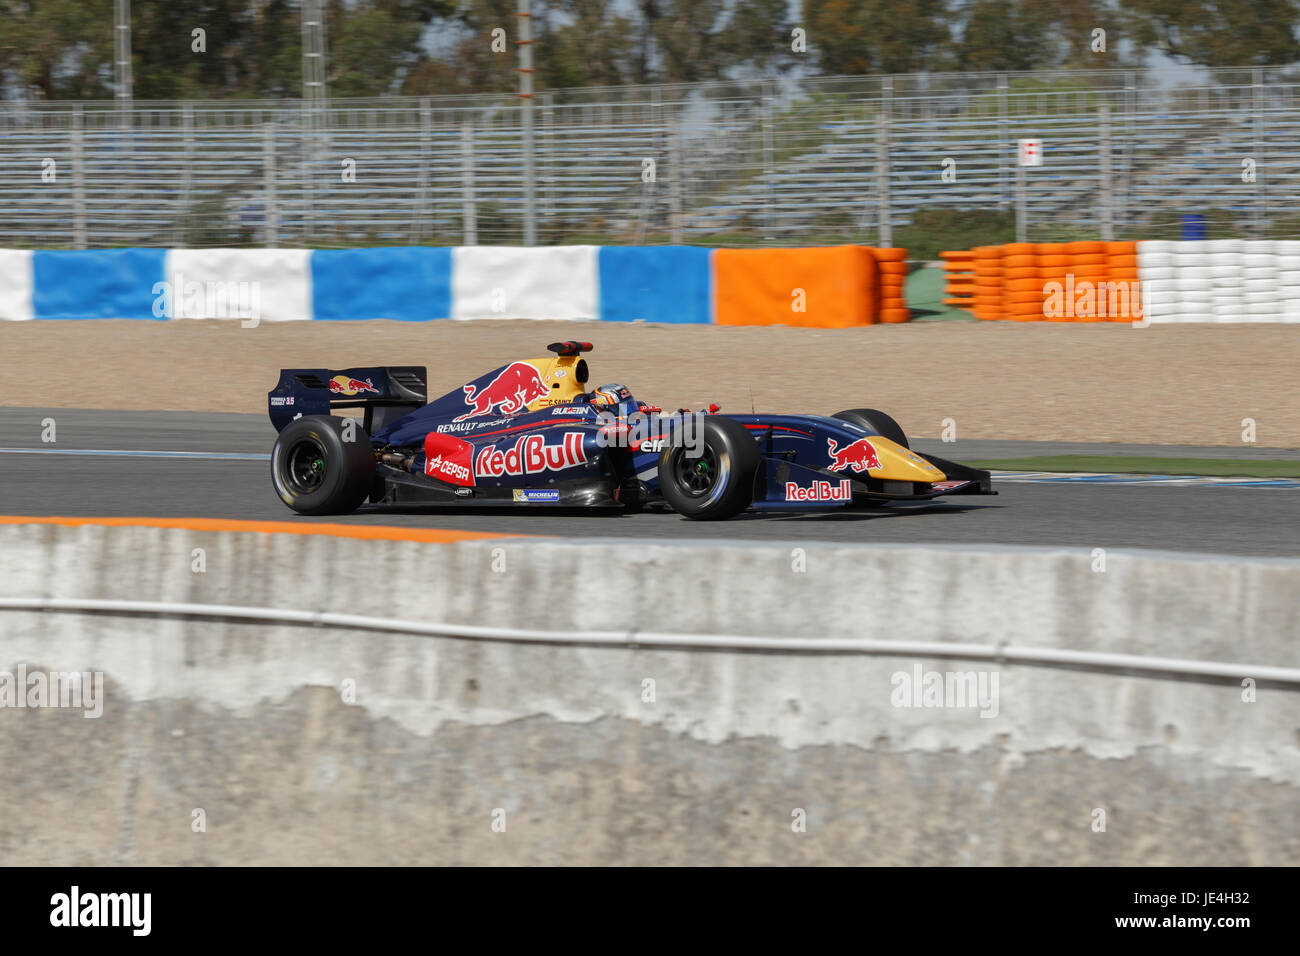 JEREZ DE LA FRONTERA, Spanien - 19. Oktober 2014: Carlos Sainz von DAMS Team fährt mit seinem Auto auf der Rennstrecke von Jerez Stockfoto